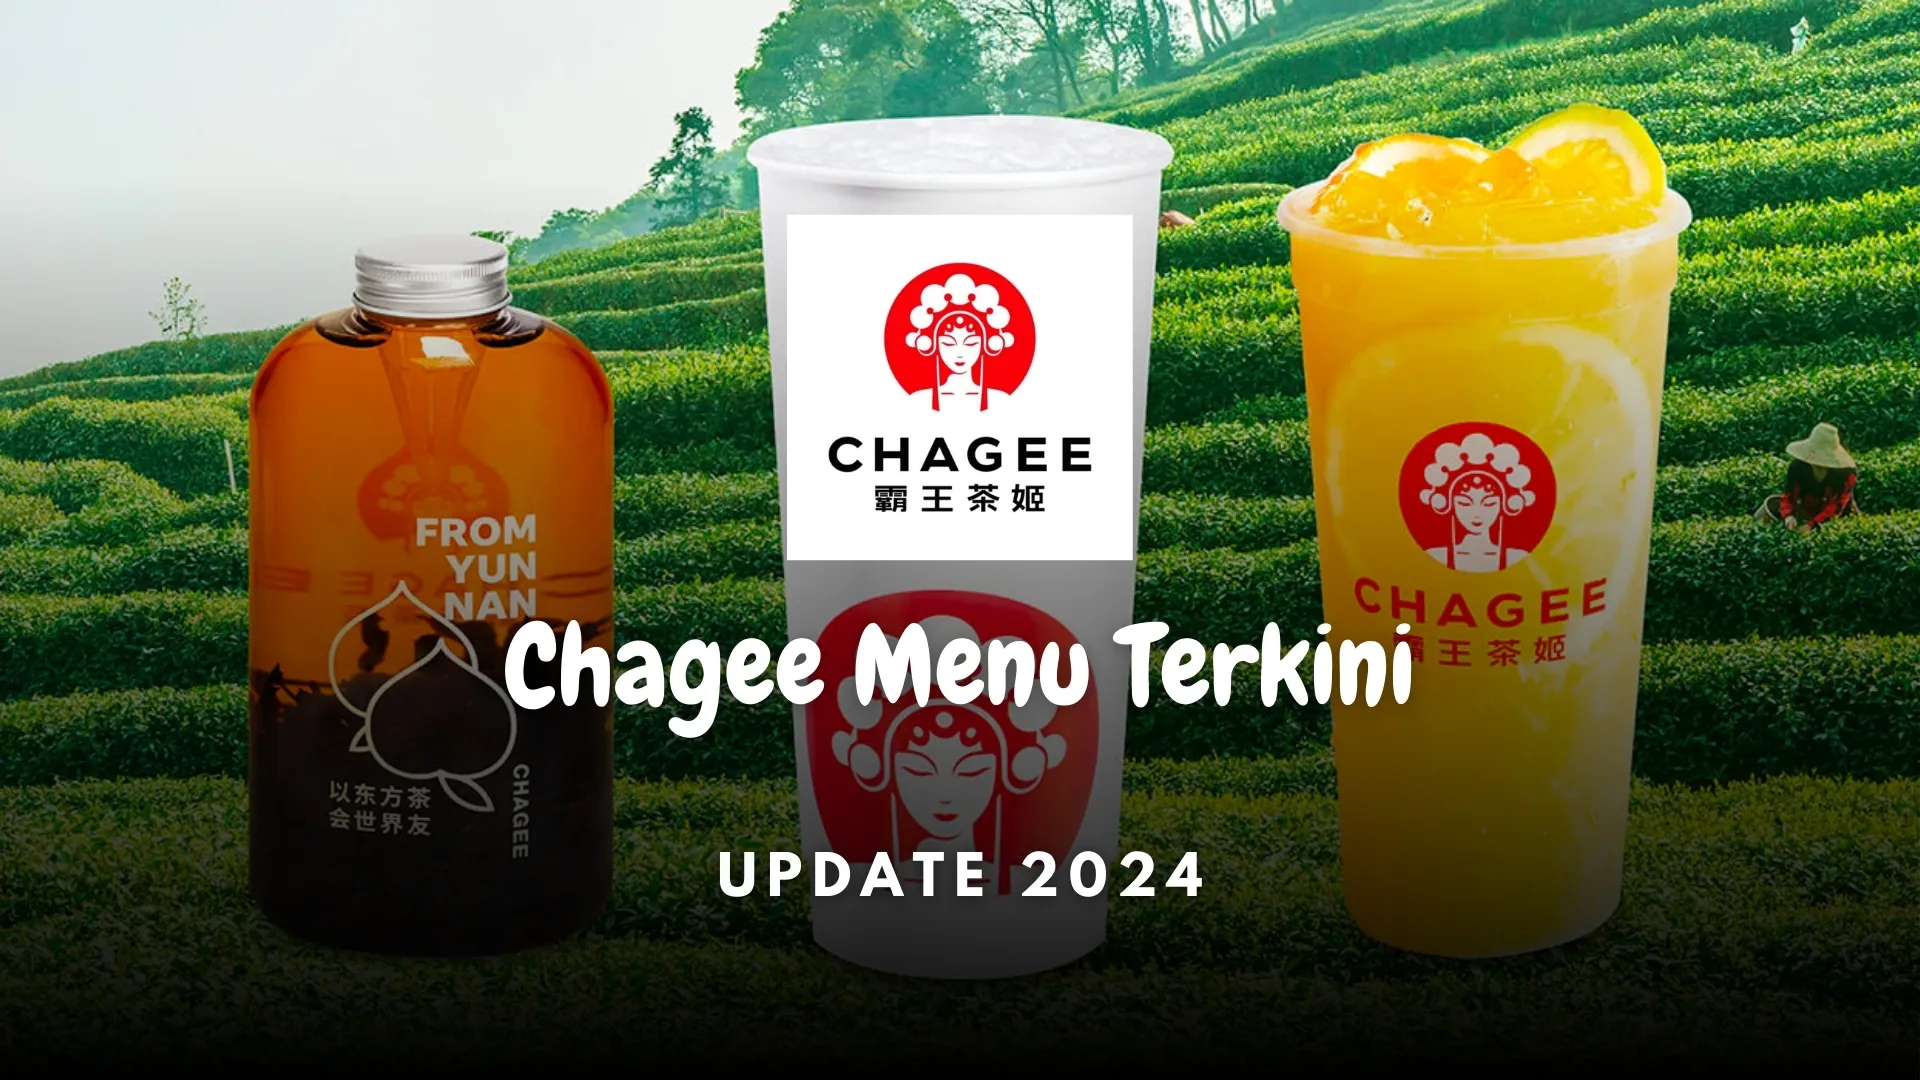 chagee menu terkini 2024